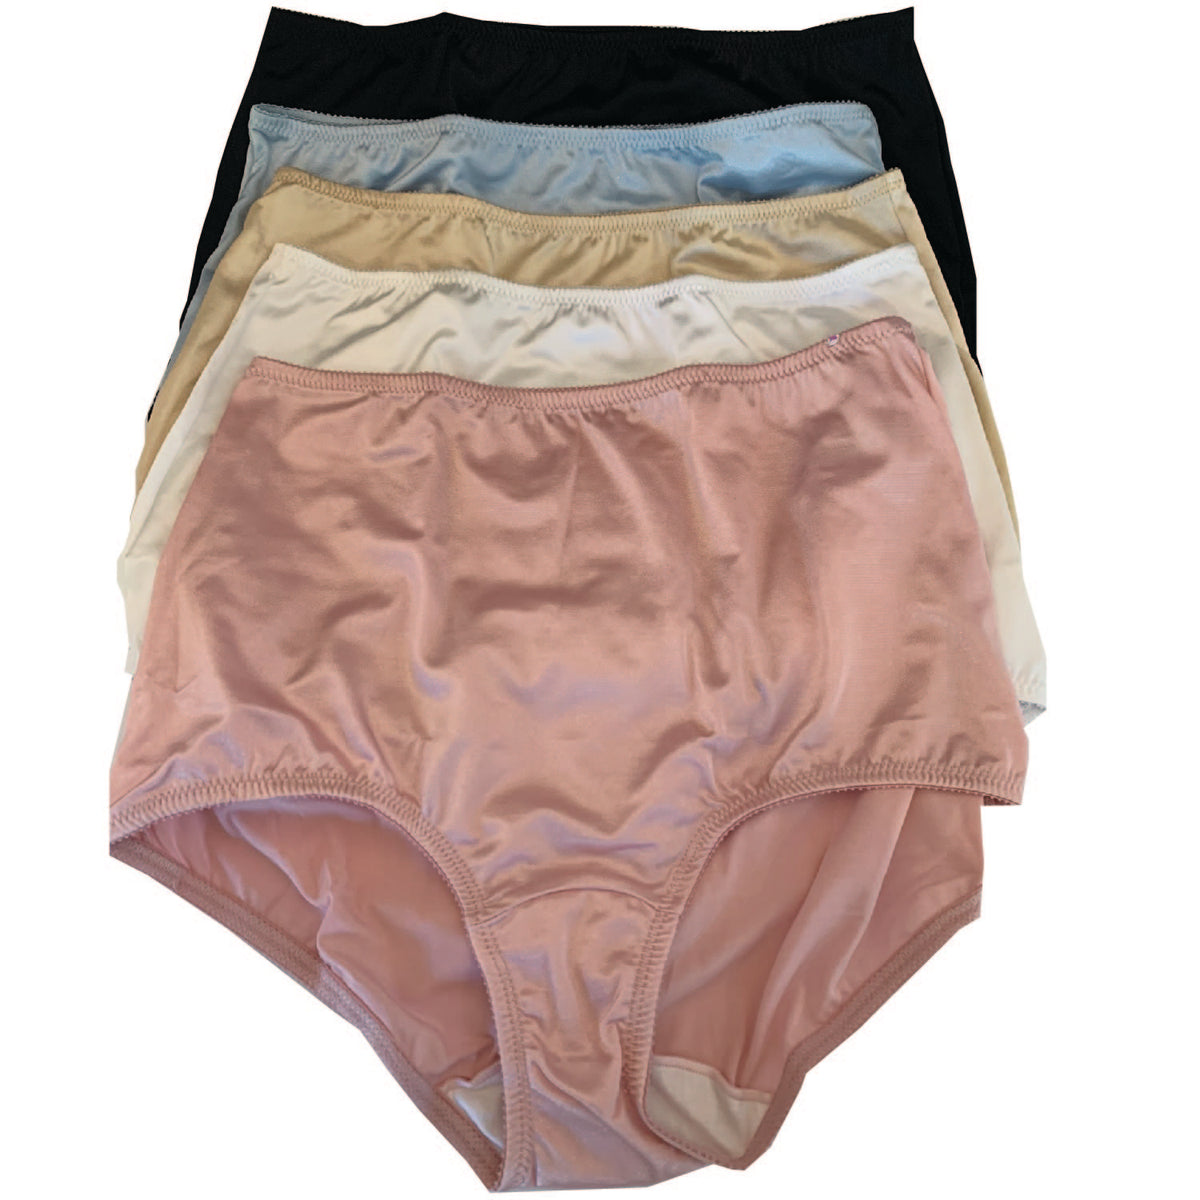 7 Days Breathable Nylon Underwear Ladies Briefs Underpants Women